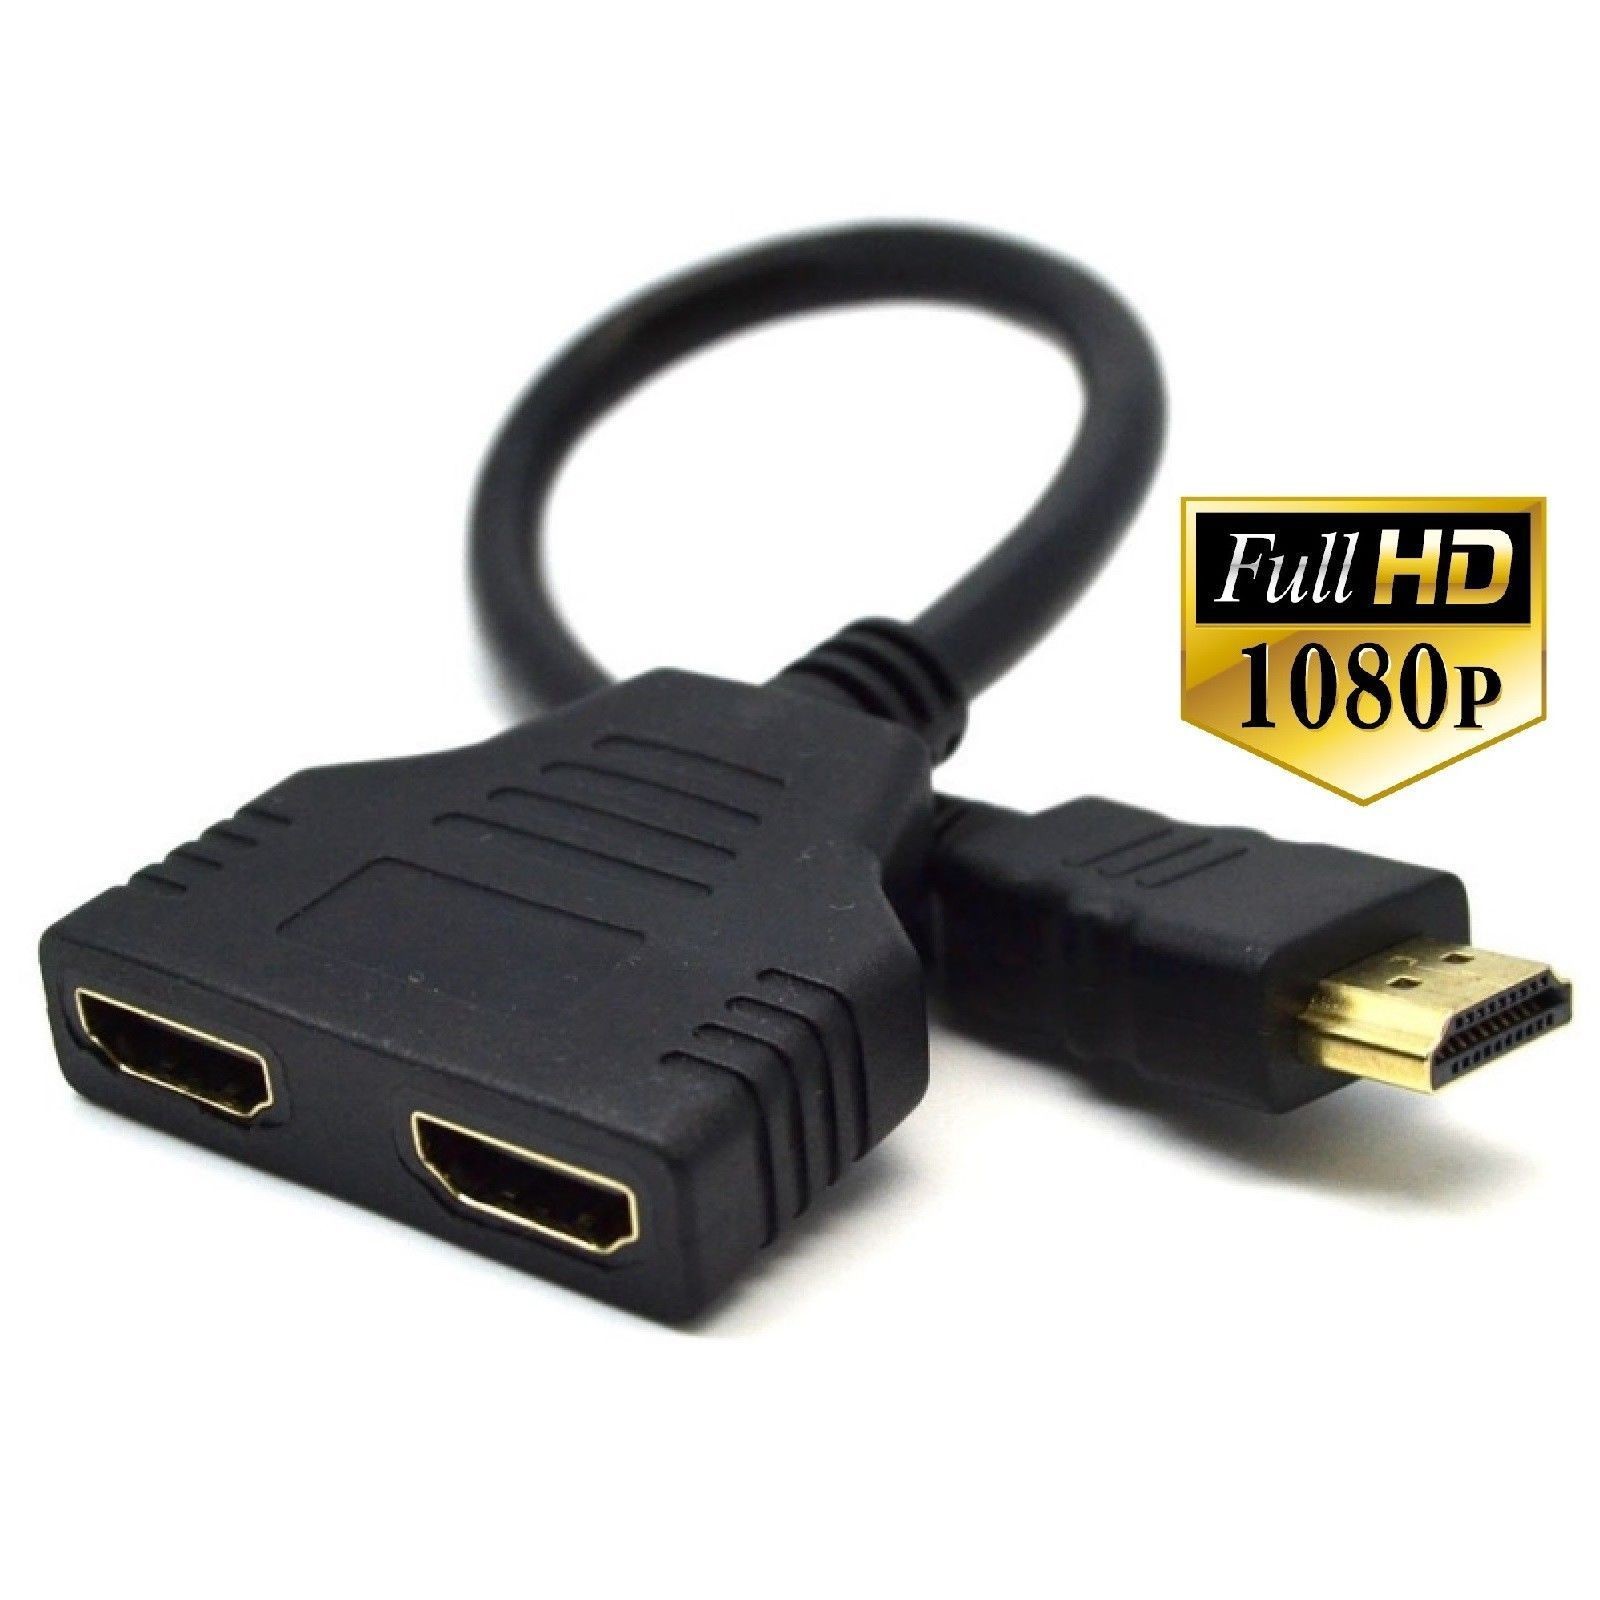 Alquiler Distribuidor de HDMI 1 Entrada-2 Salidas